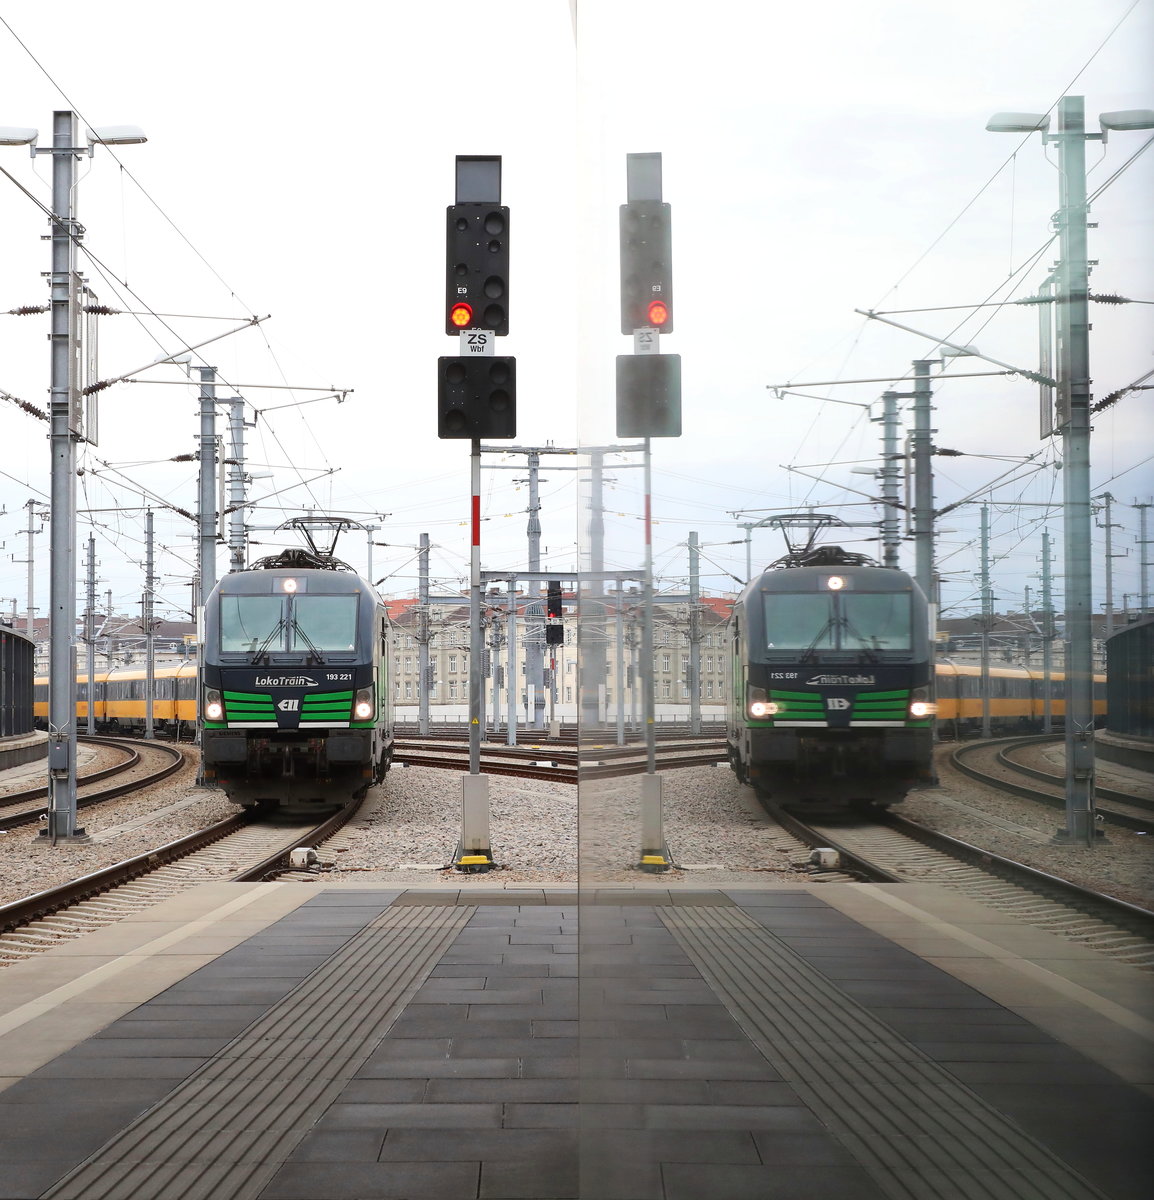 Mein erstes Antreffen eines Regio-Jet Zuges in Wien Hauptbahnhof am 3.02.2018. 
Nach dem Stürzen des Zuges in Matzleinsdorf stellt sich 193.221 am Bahnsteig 12 auf.